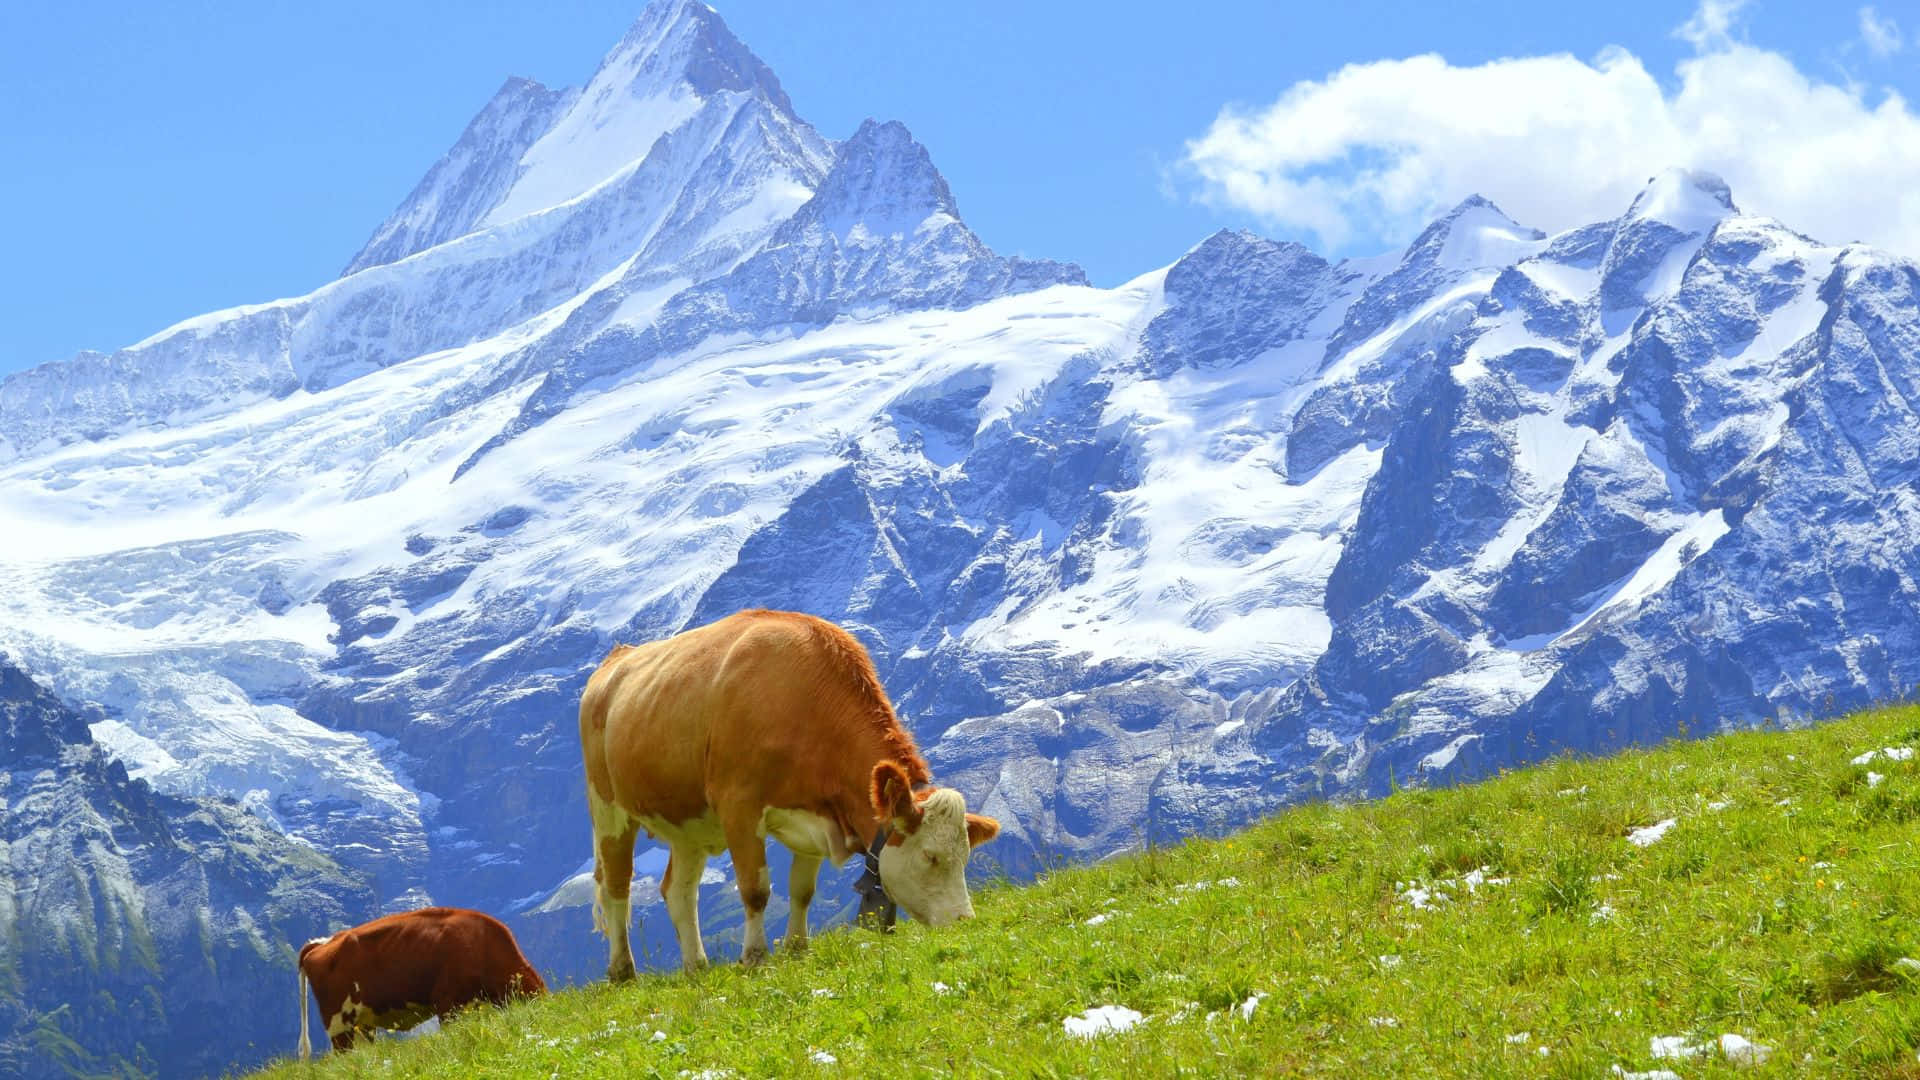 Idyllic Swiss Alps Scenery